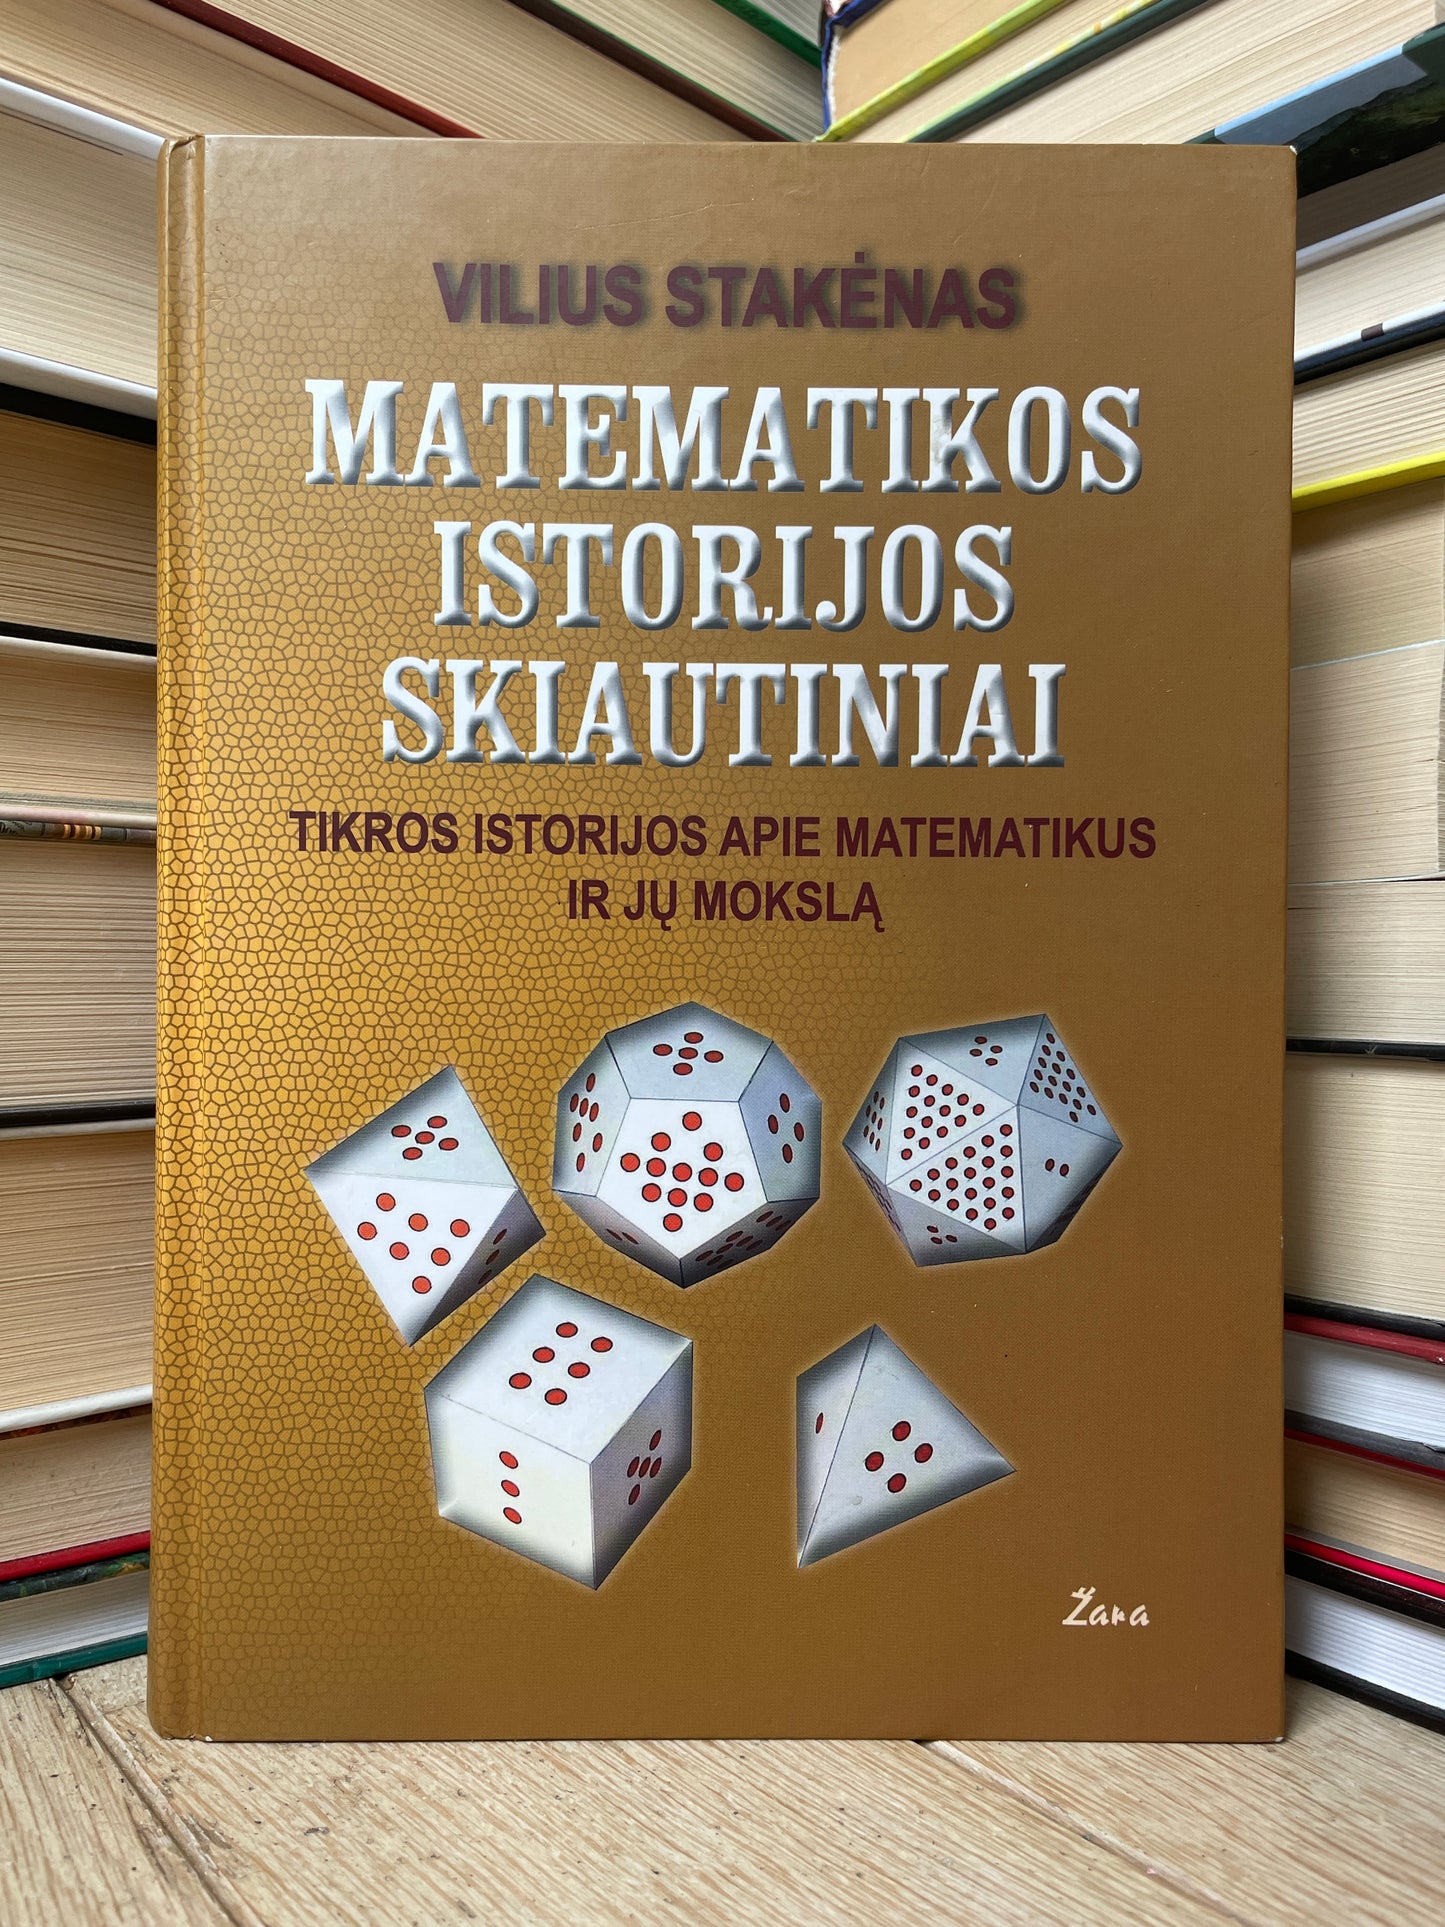 Vilius Stakėnas - ,,Matematikos istorijos skliautiniai"